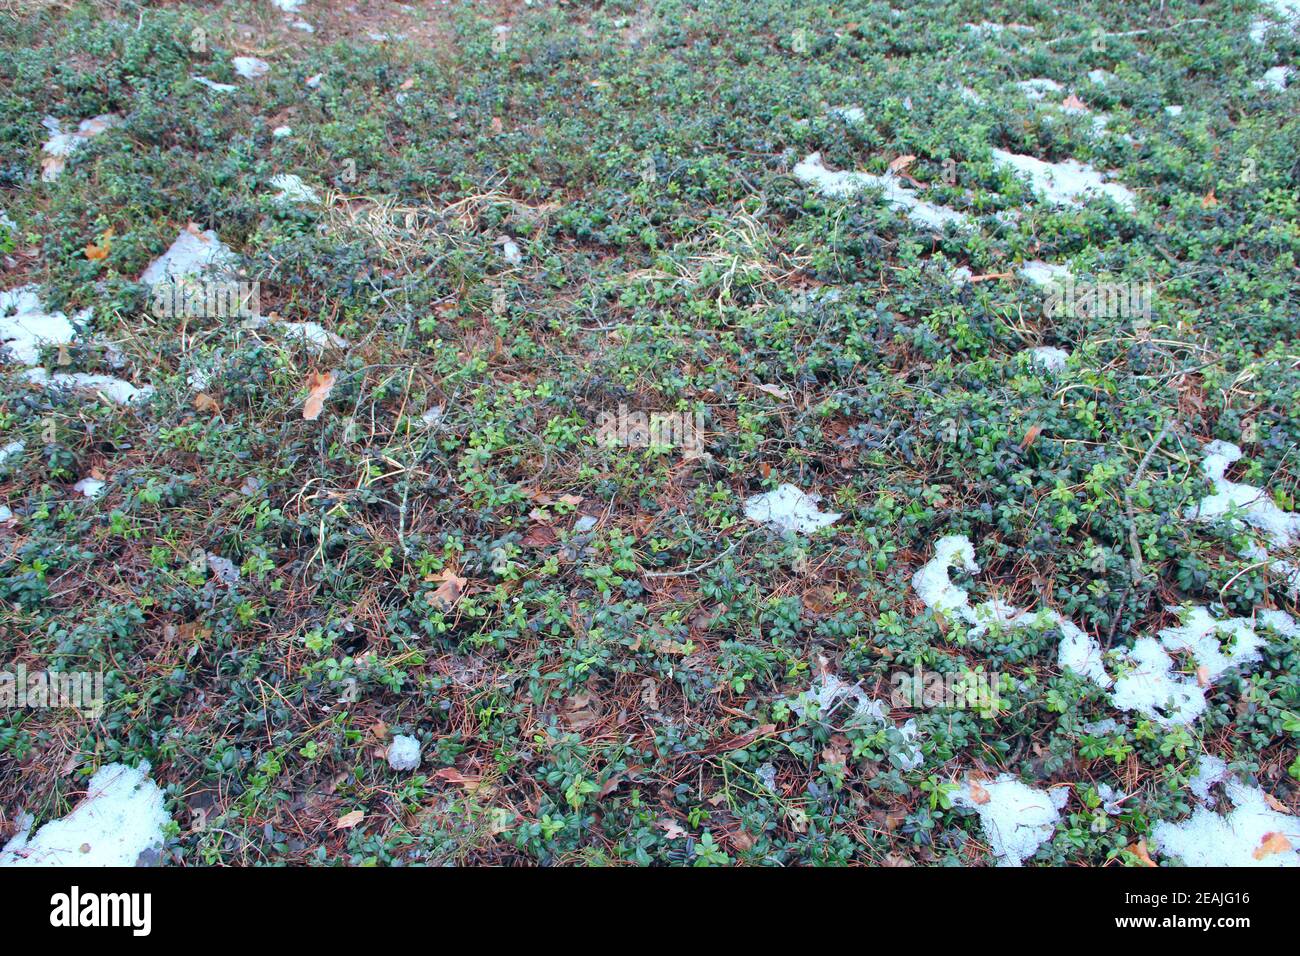 Vaccinium vitis-idaea under snow in spring forest Stock Photo